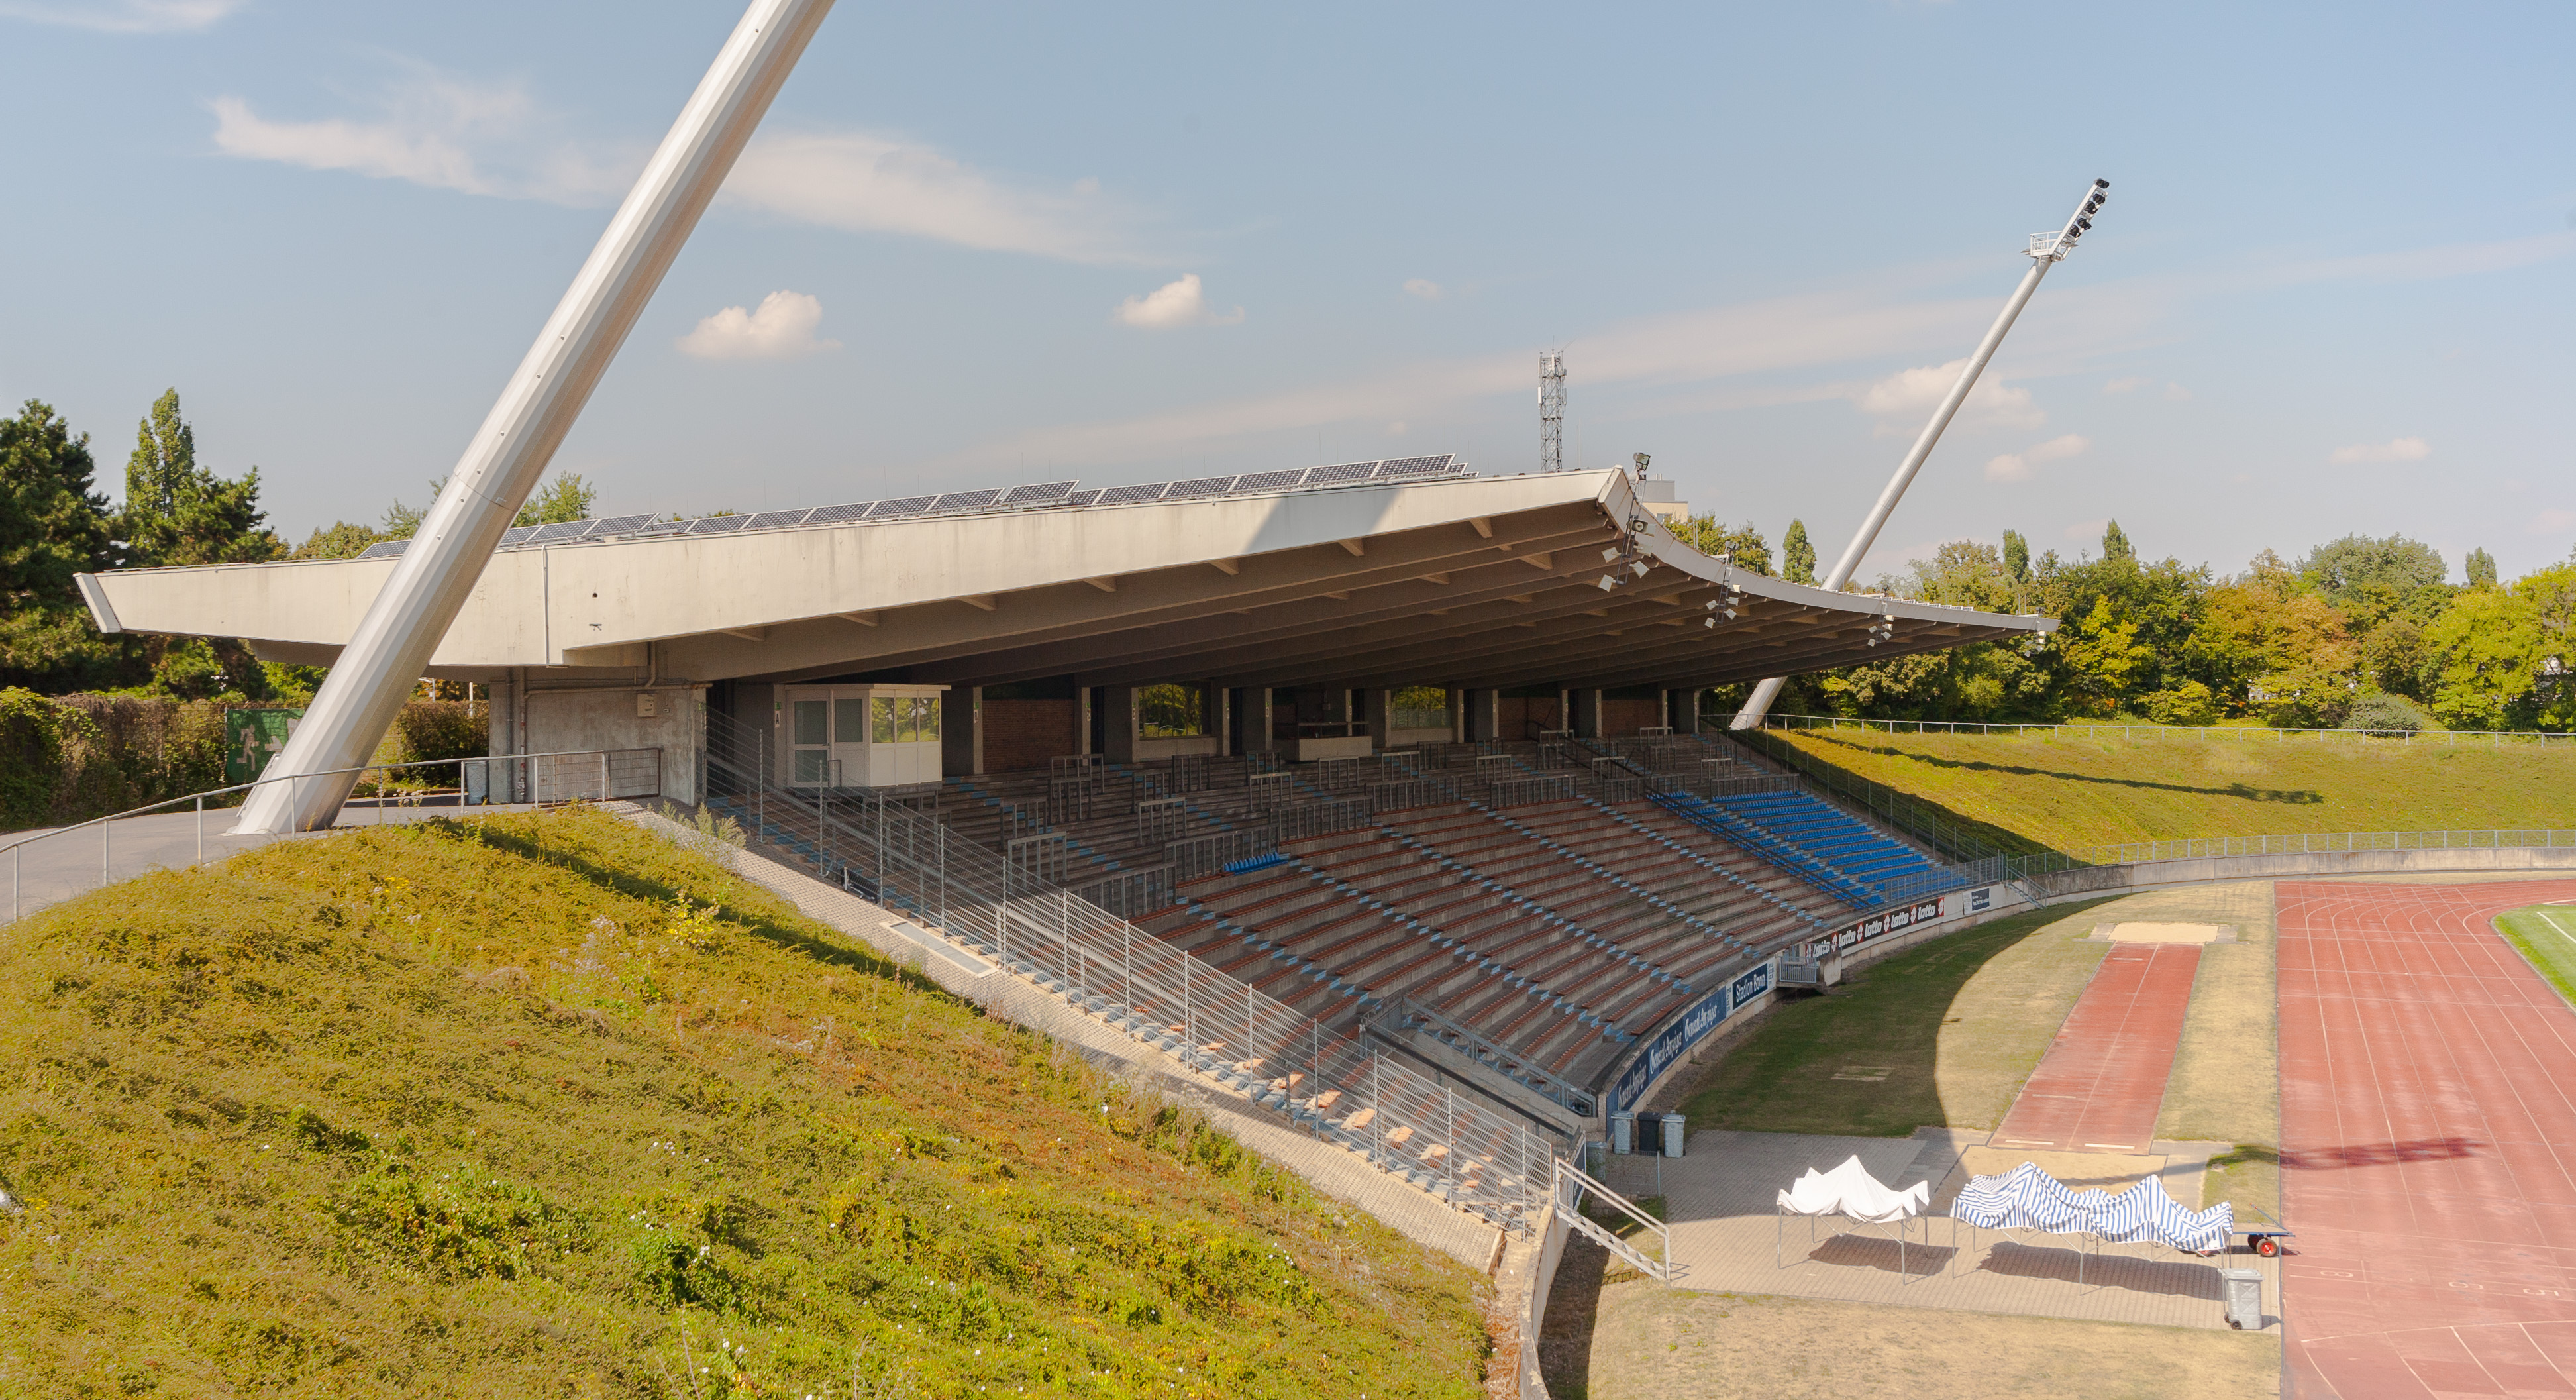 2013-08-23 Sportpark Nord, Bonn - Stadion-Tribüne; Ansicht aus Südost IMG 5115